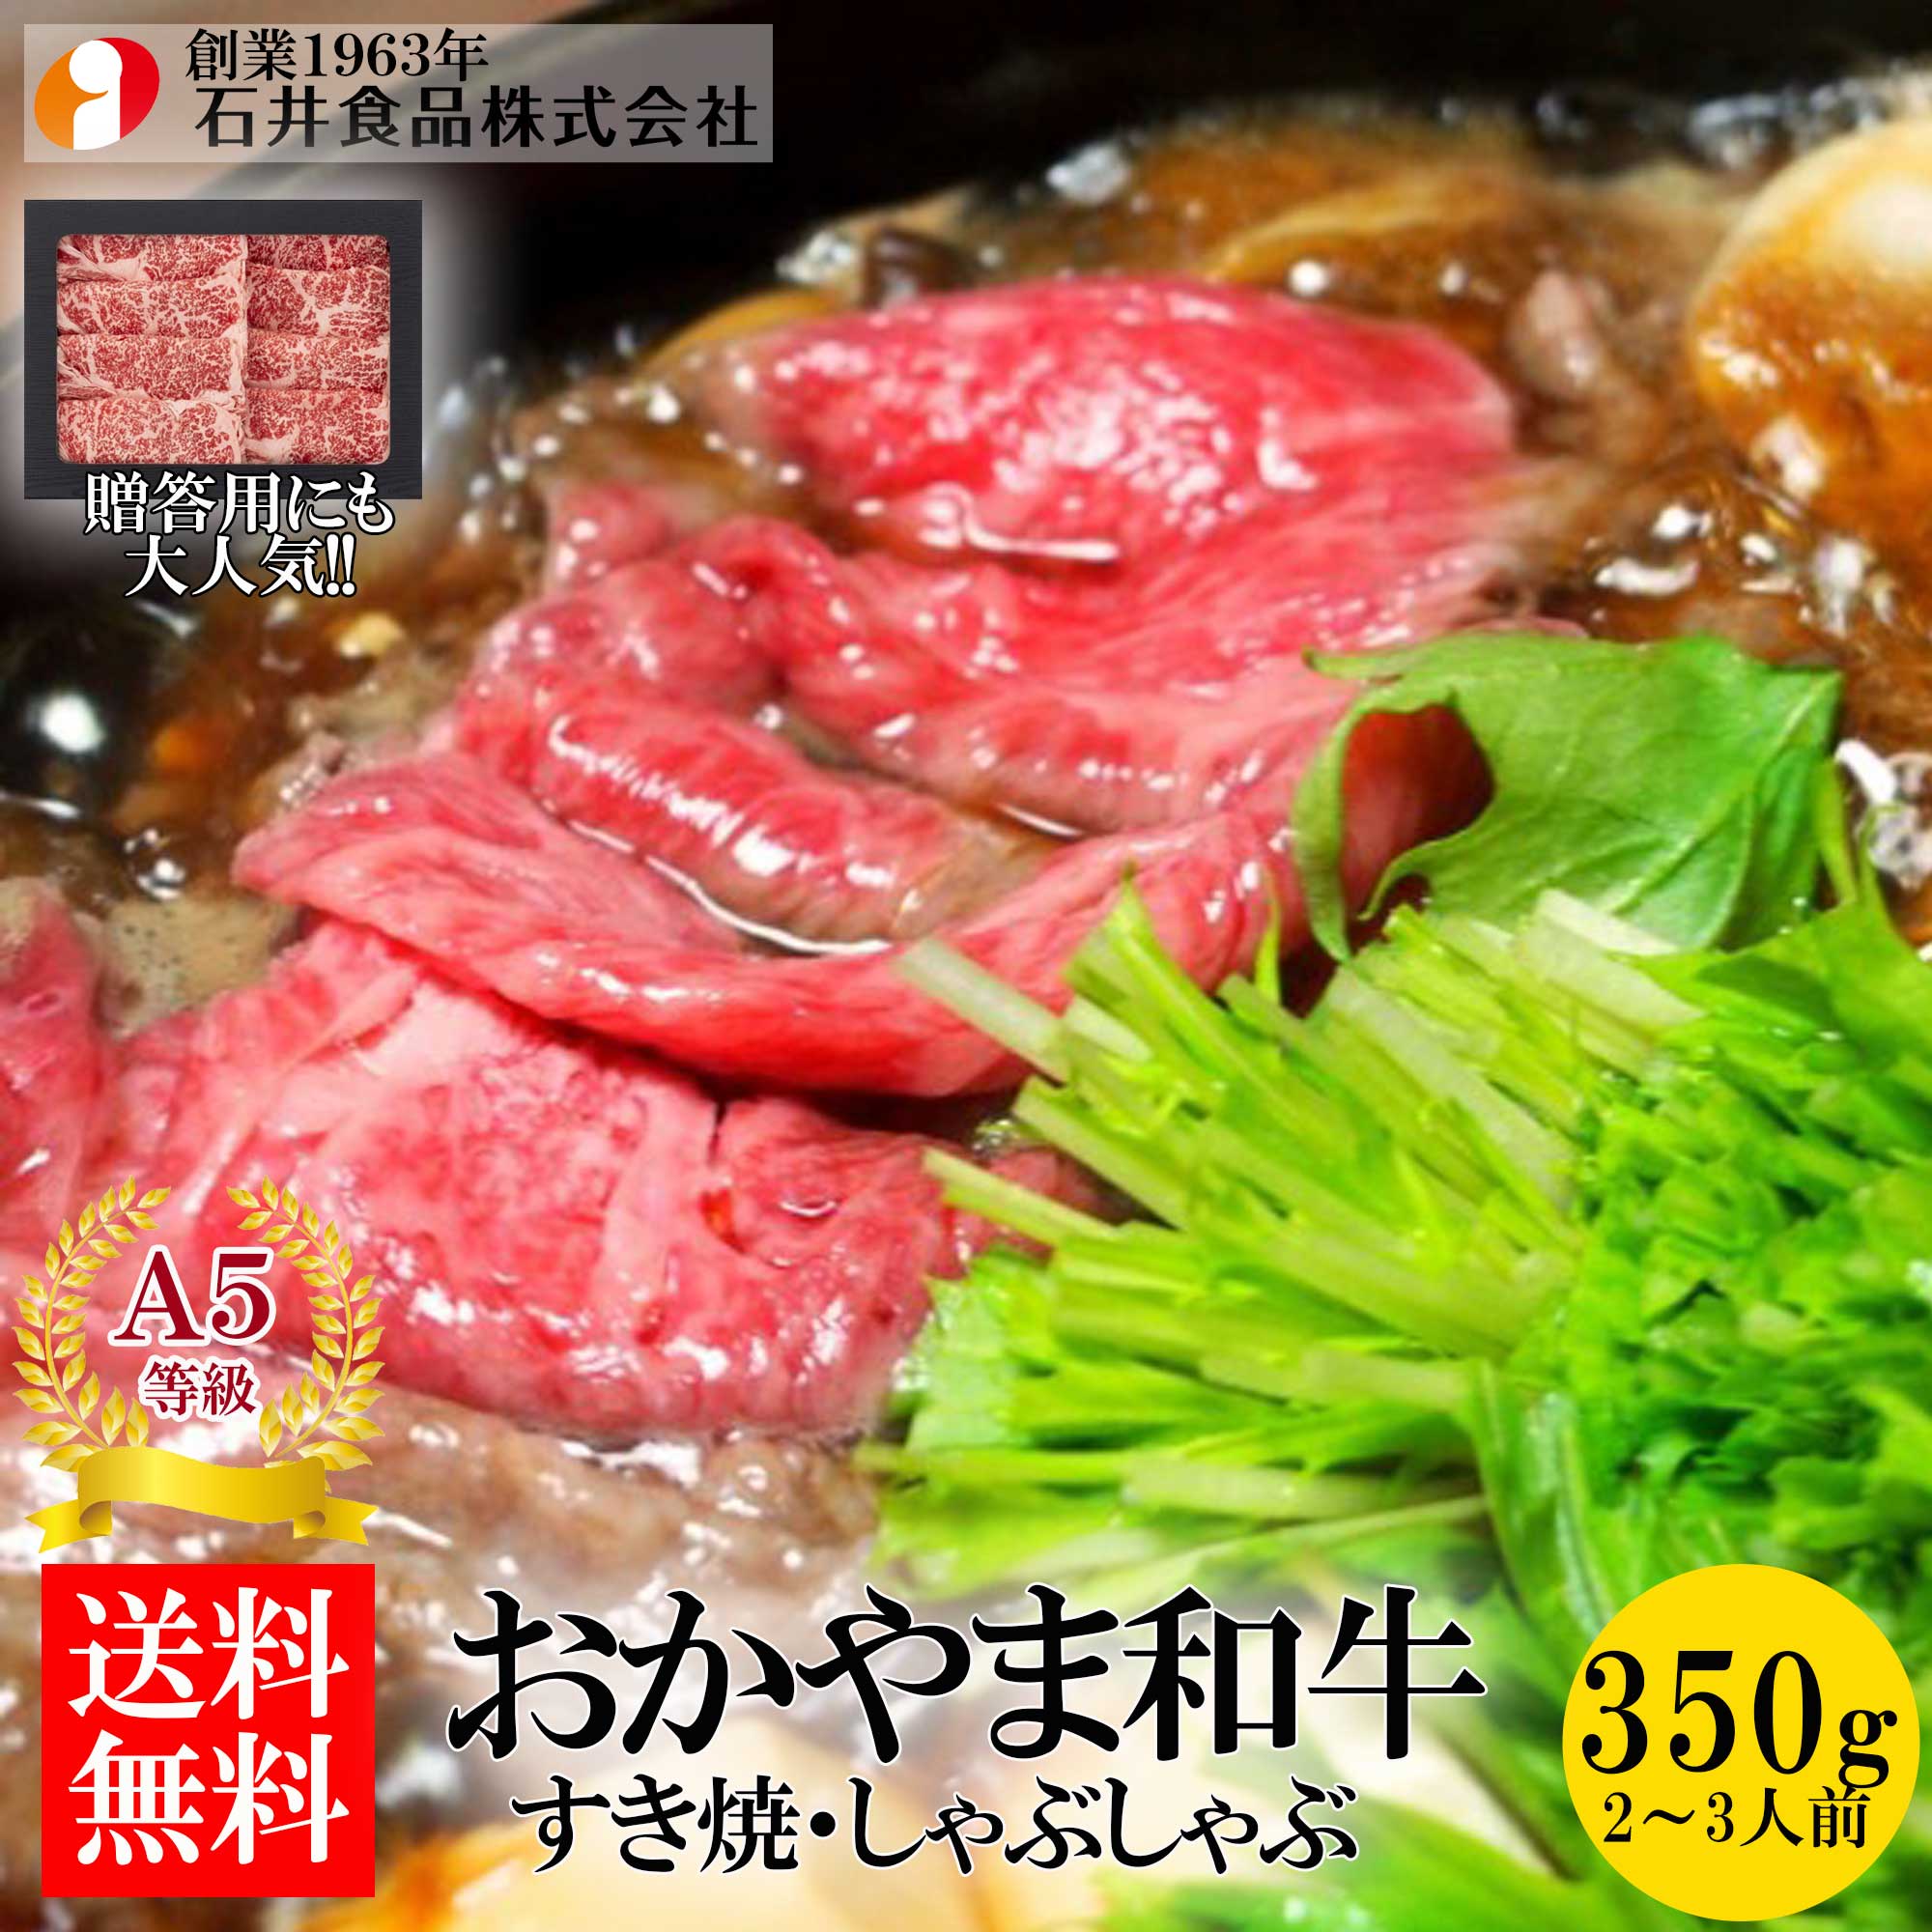 【石井食品】 おかやま和牛（A5等級）すき焼き・しゃぶしゃぶ 350g